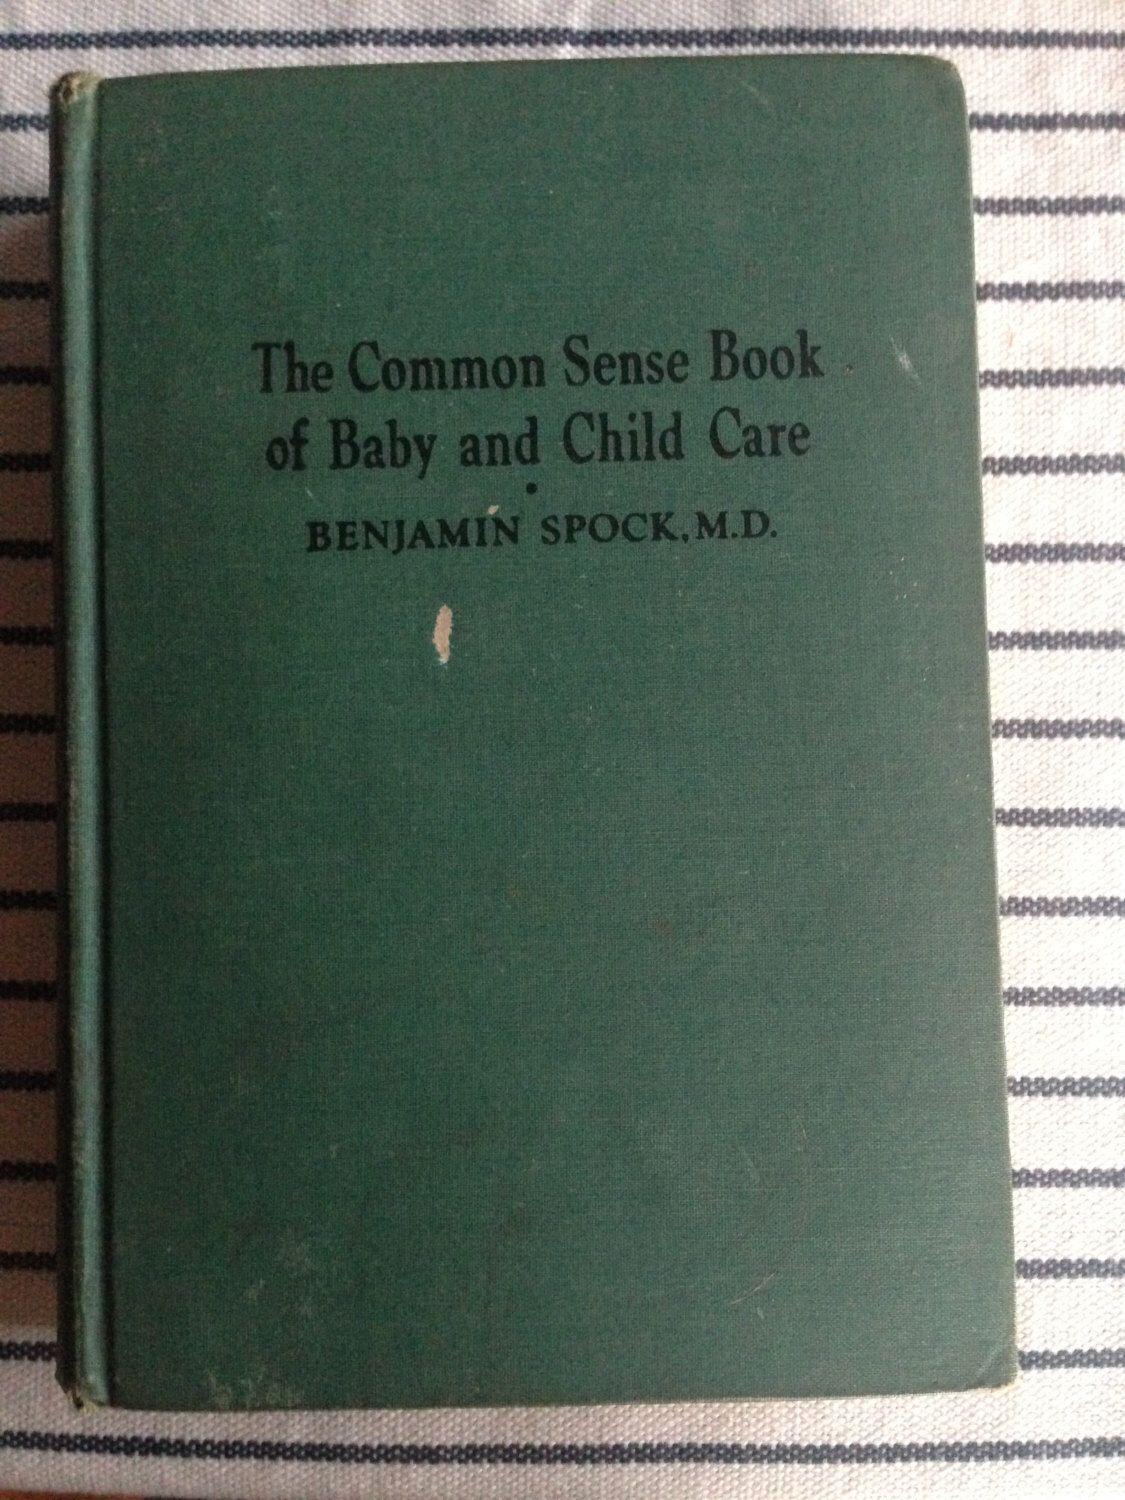 كتاب رعاية الأطفال والرضع - بنيامين سبوك - كتب نشرت الفساد في العالم